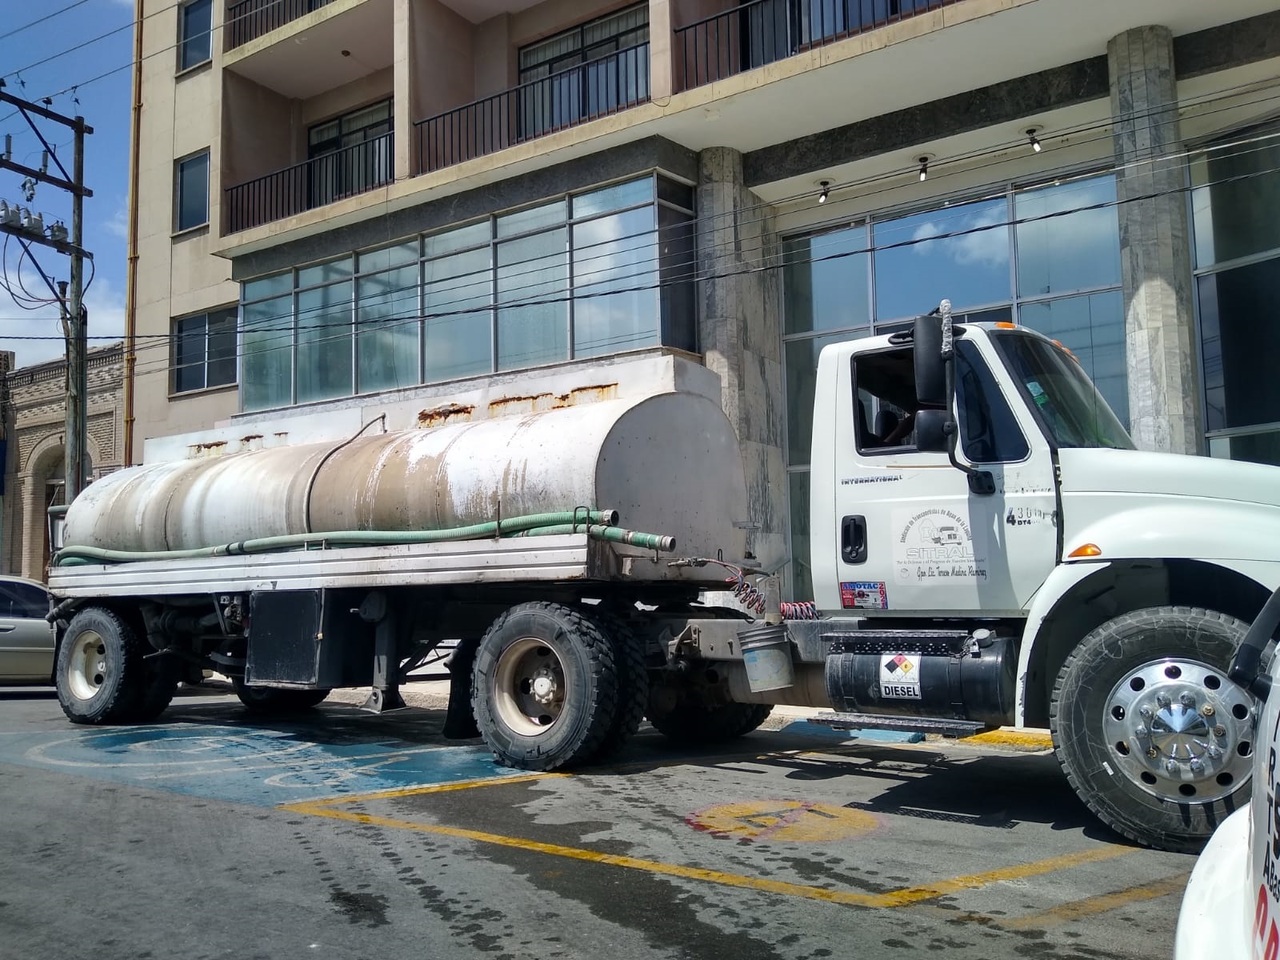 Señalan administradores y trabajadores de venta de agua por pipas que en este mes de abril 'se ha disparado' la demanda de su servicio, en coincidencia con la falta de agua en diversos sectores del municipio de Torreón.